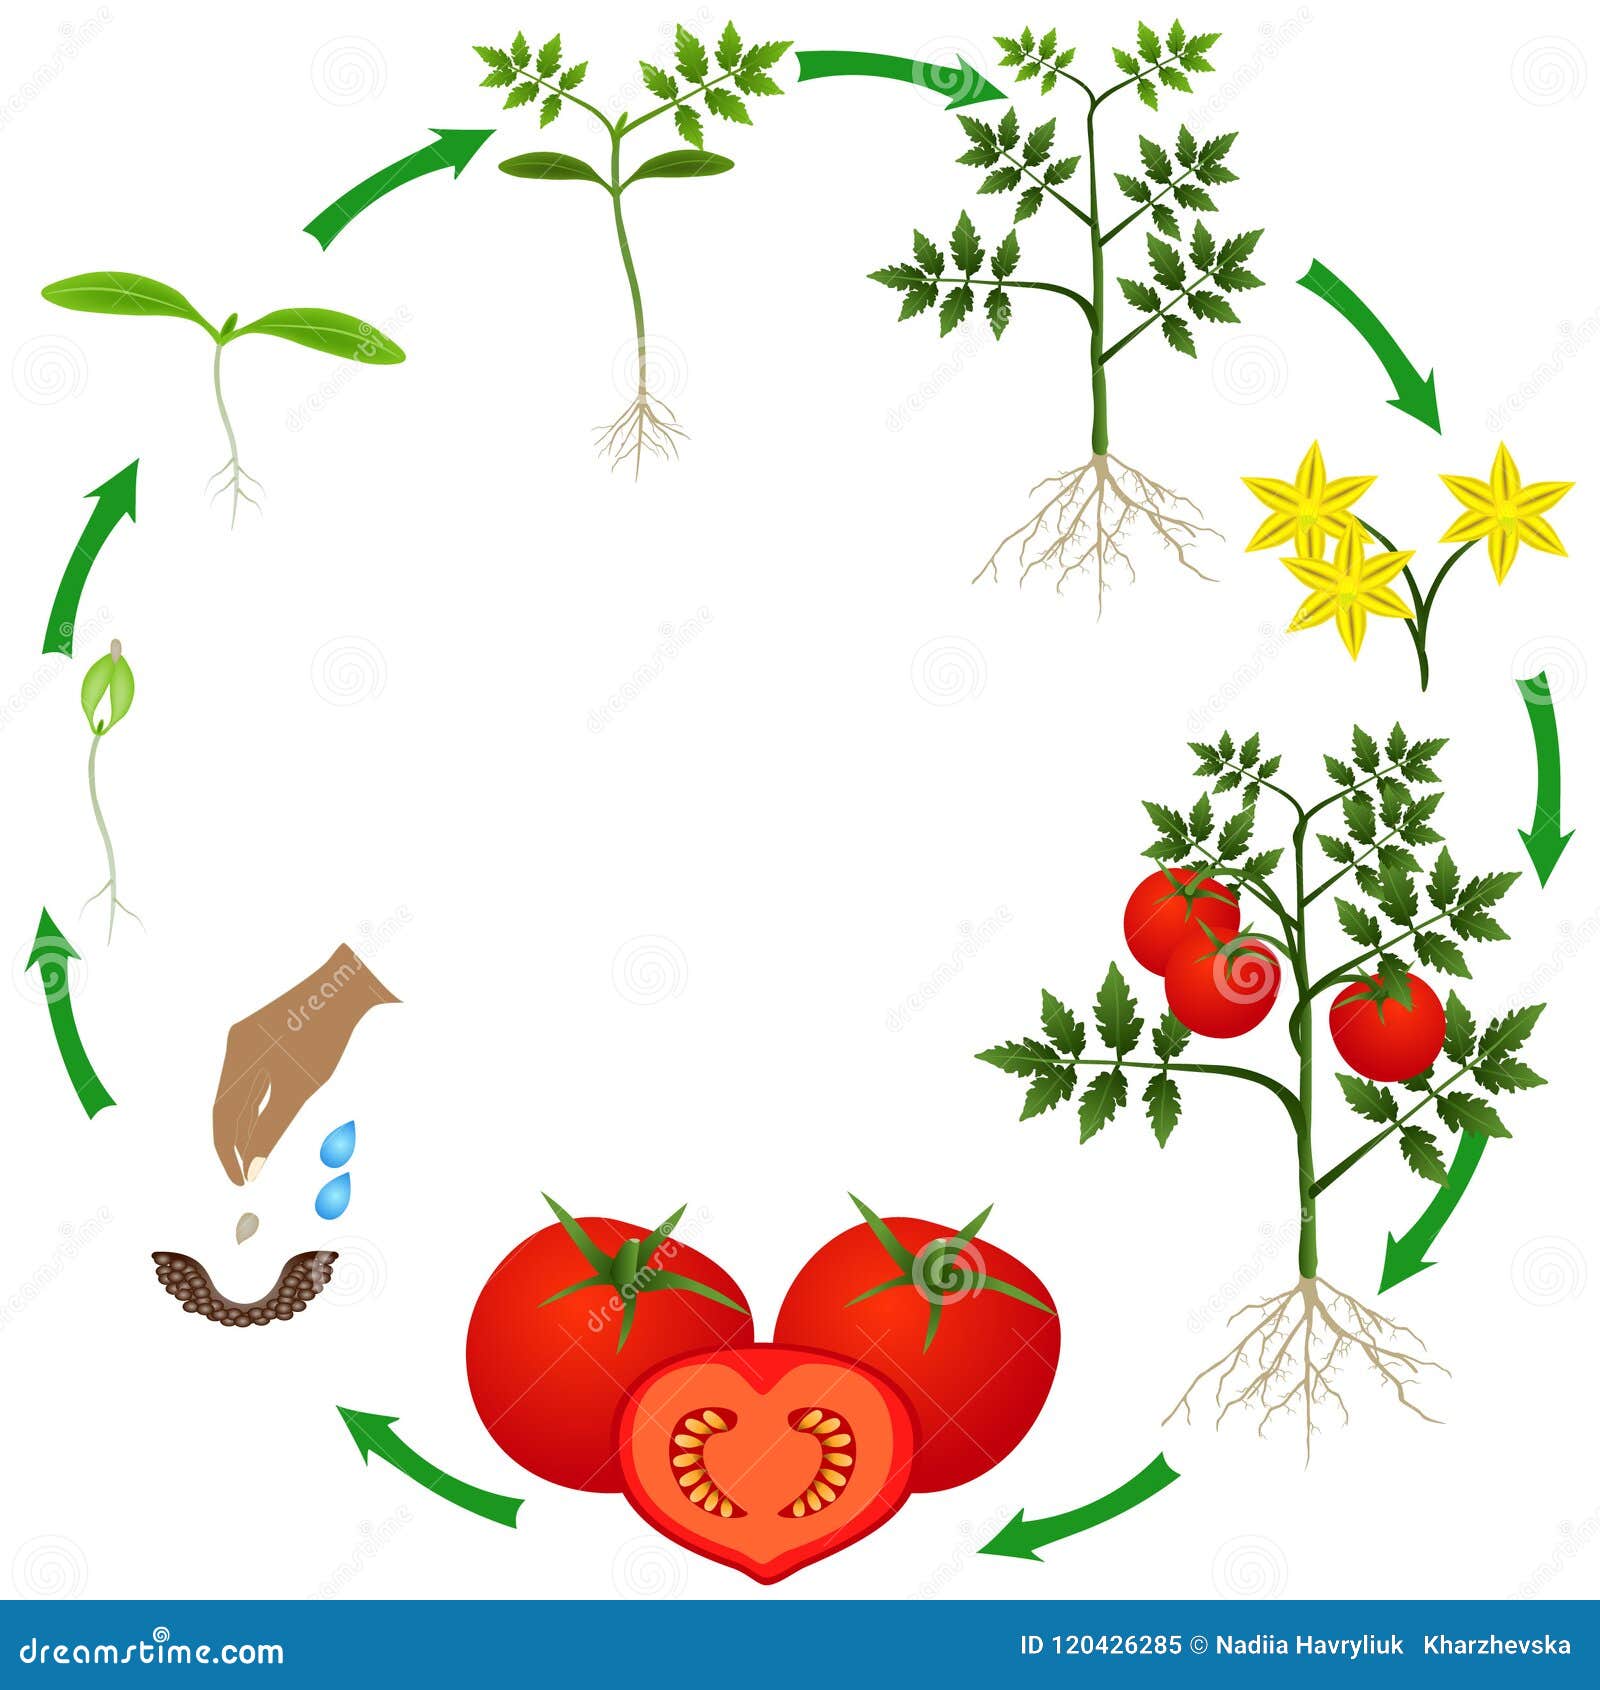 Жизненный цикл овощных растений по маркову. Жизненный цикл томата. Цикл роста томатов. Этапы роста помидор. Жизненный цикл растений для дошкольников.